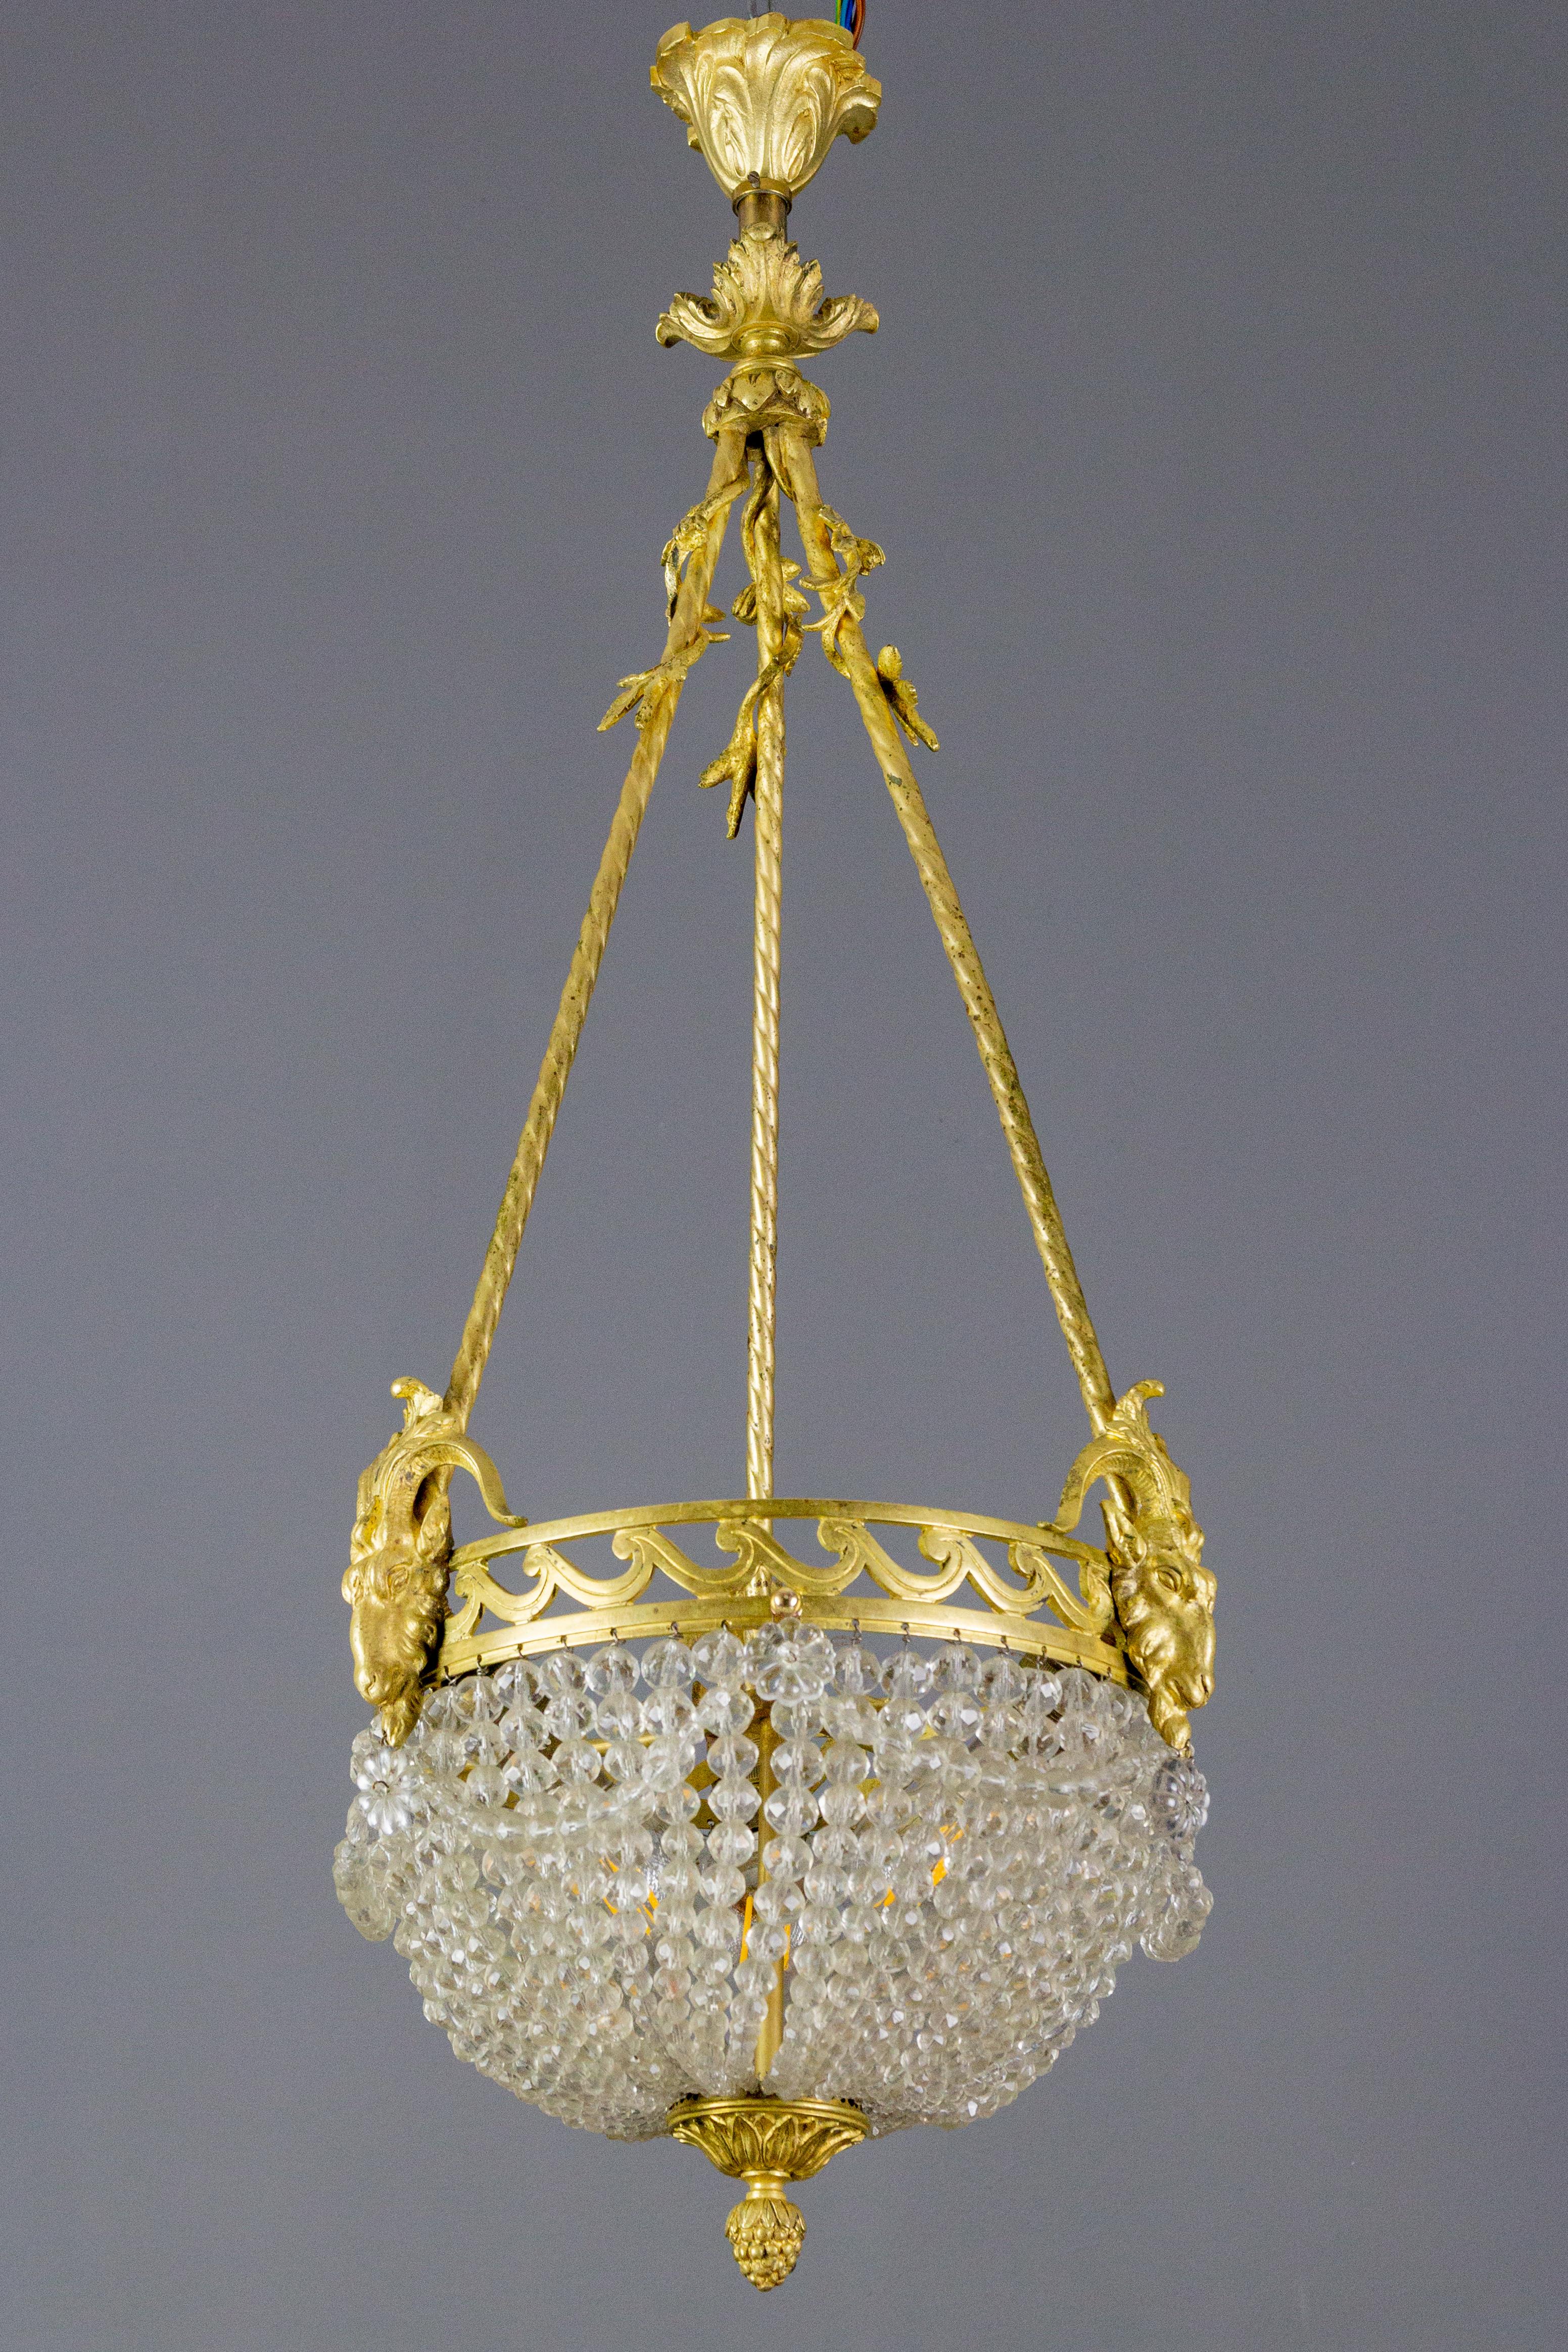 Un adorable lustre français de style Louis XVI datant des années 1920. La grappe lumineuse centrale est entourée de belles guirlandes de cristal perlé et d'une élégante bordure ornée de trois têtes de bélier et suspendue par trois cordes en bronze,